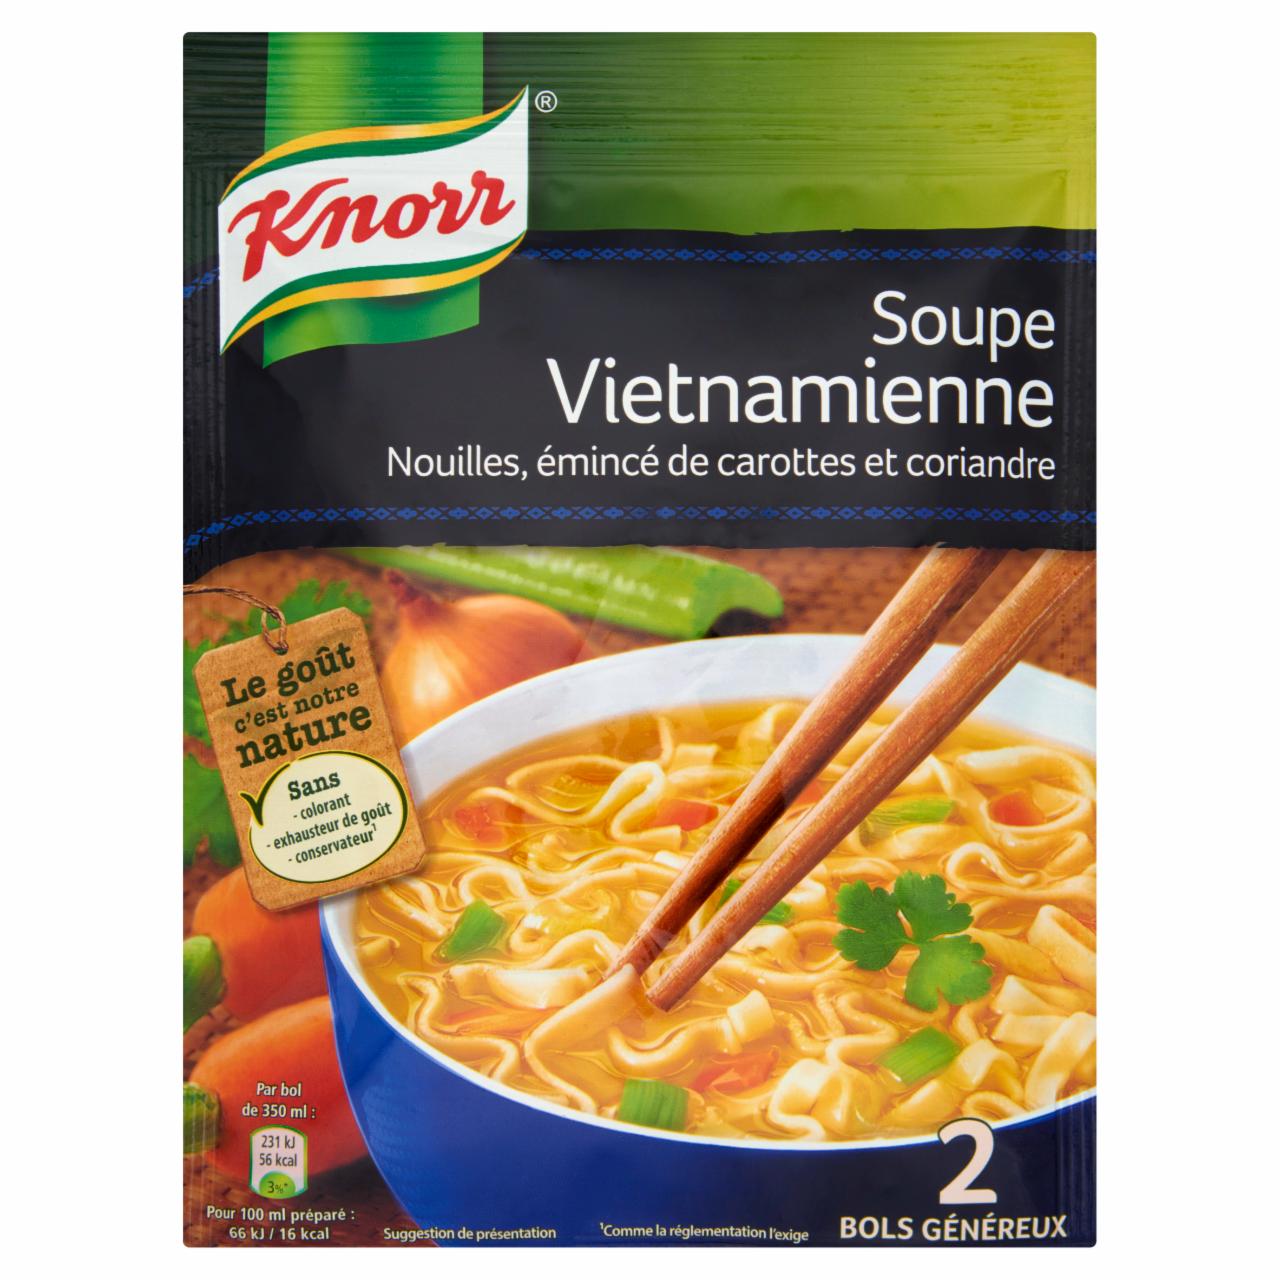 Képek - Knorr vietnámi zöldségleves tésztával 39 g